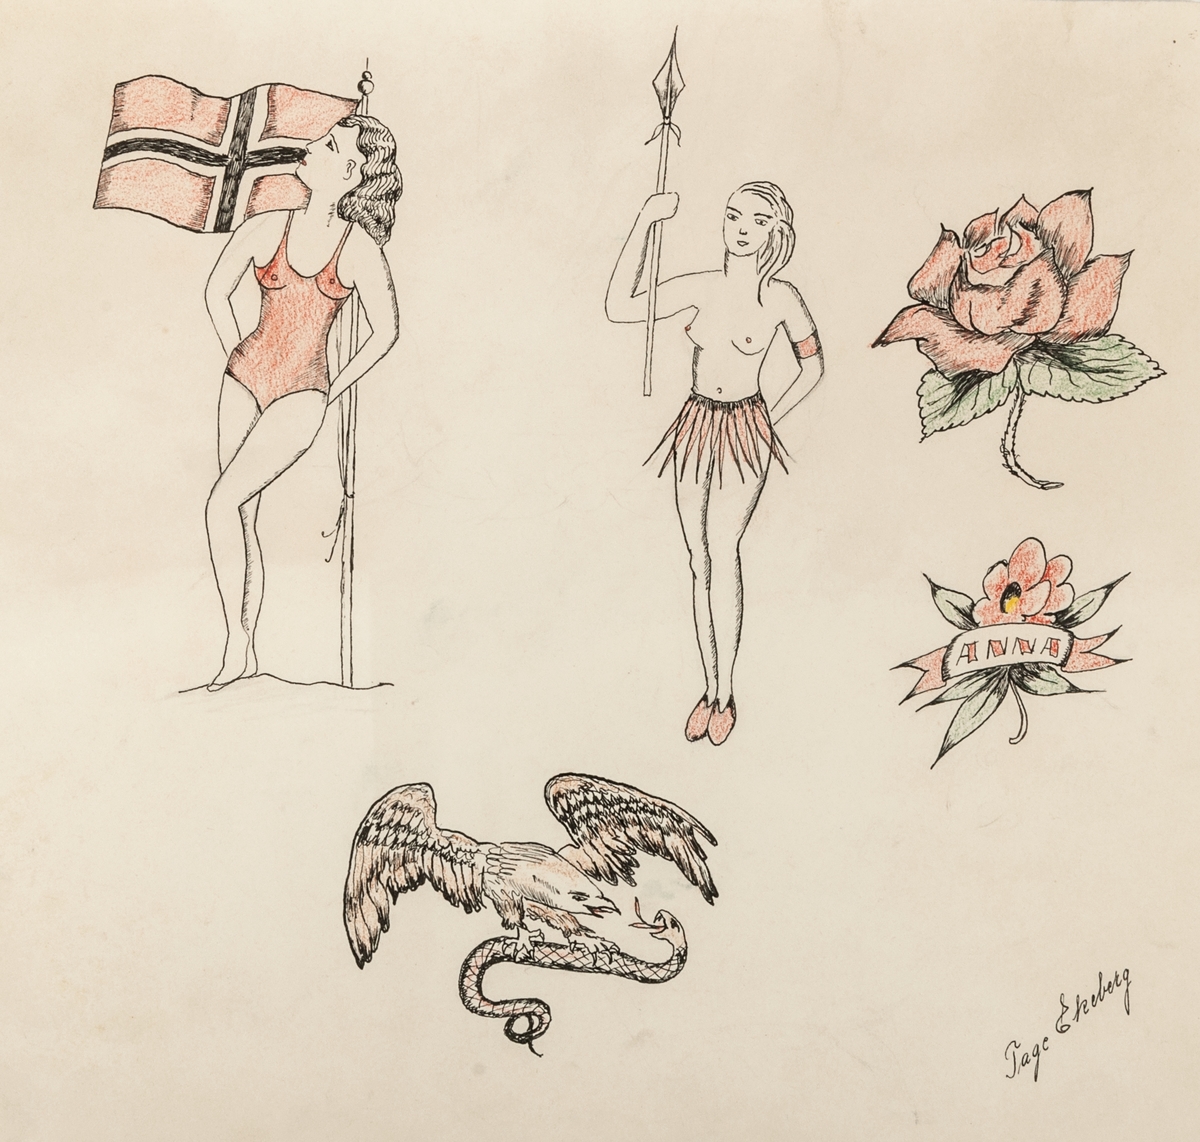 Tatueringsförelagor. 4 stycken teckningar föreställande kvinna med stjärnbanér, fregatt med kvinnoansikte, räddningskrans, skepp "Sailors grave" hjärtan, orm, örn med namnet Linnéa, m.m.